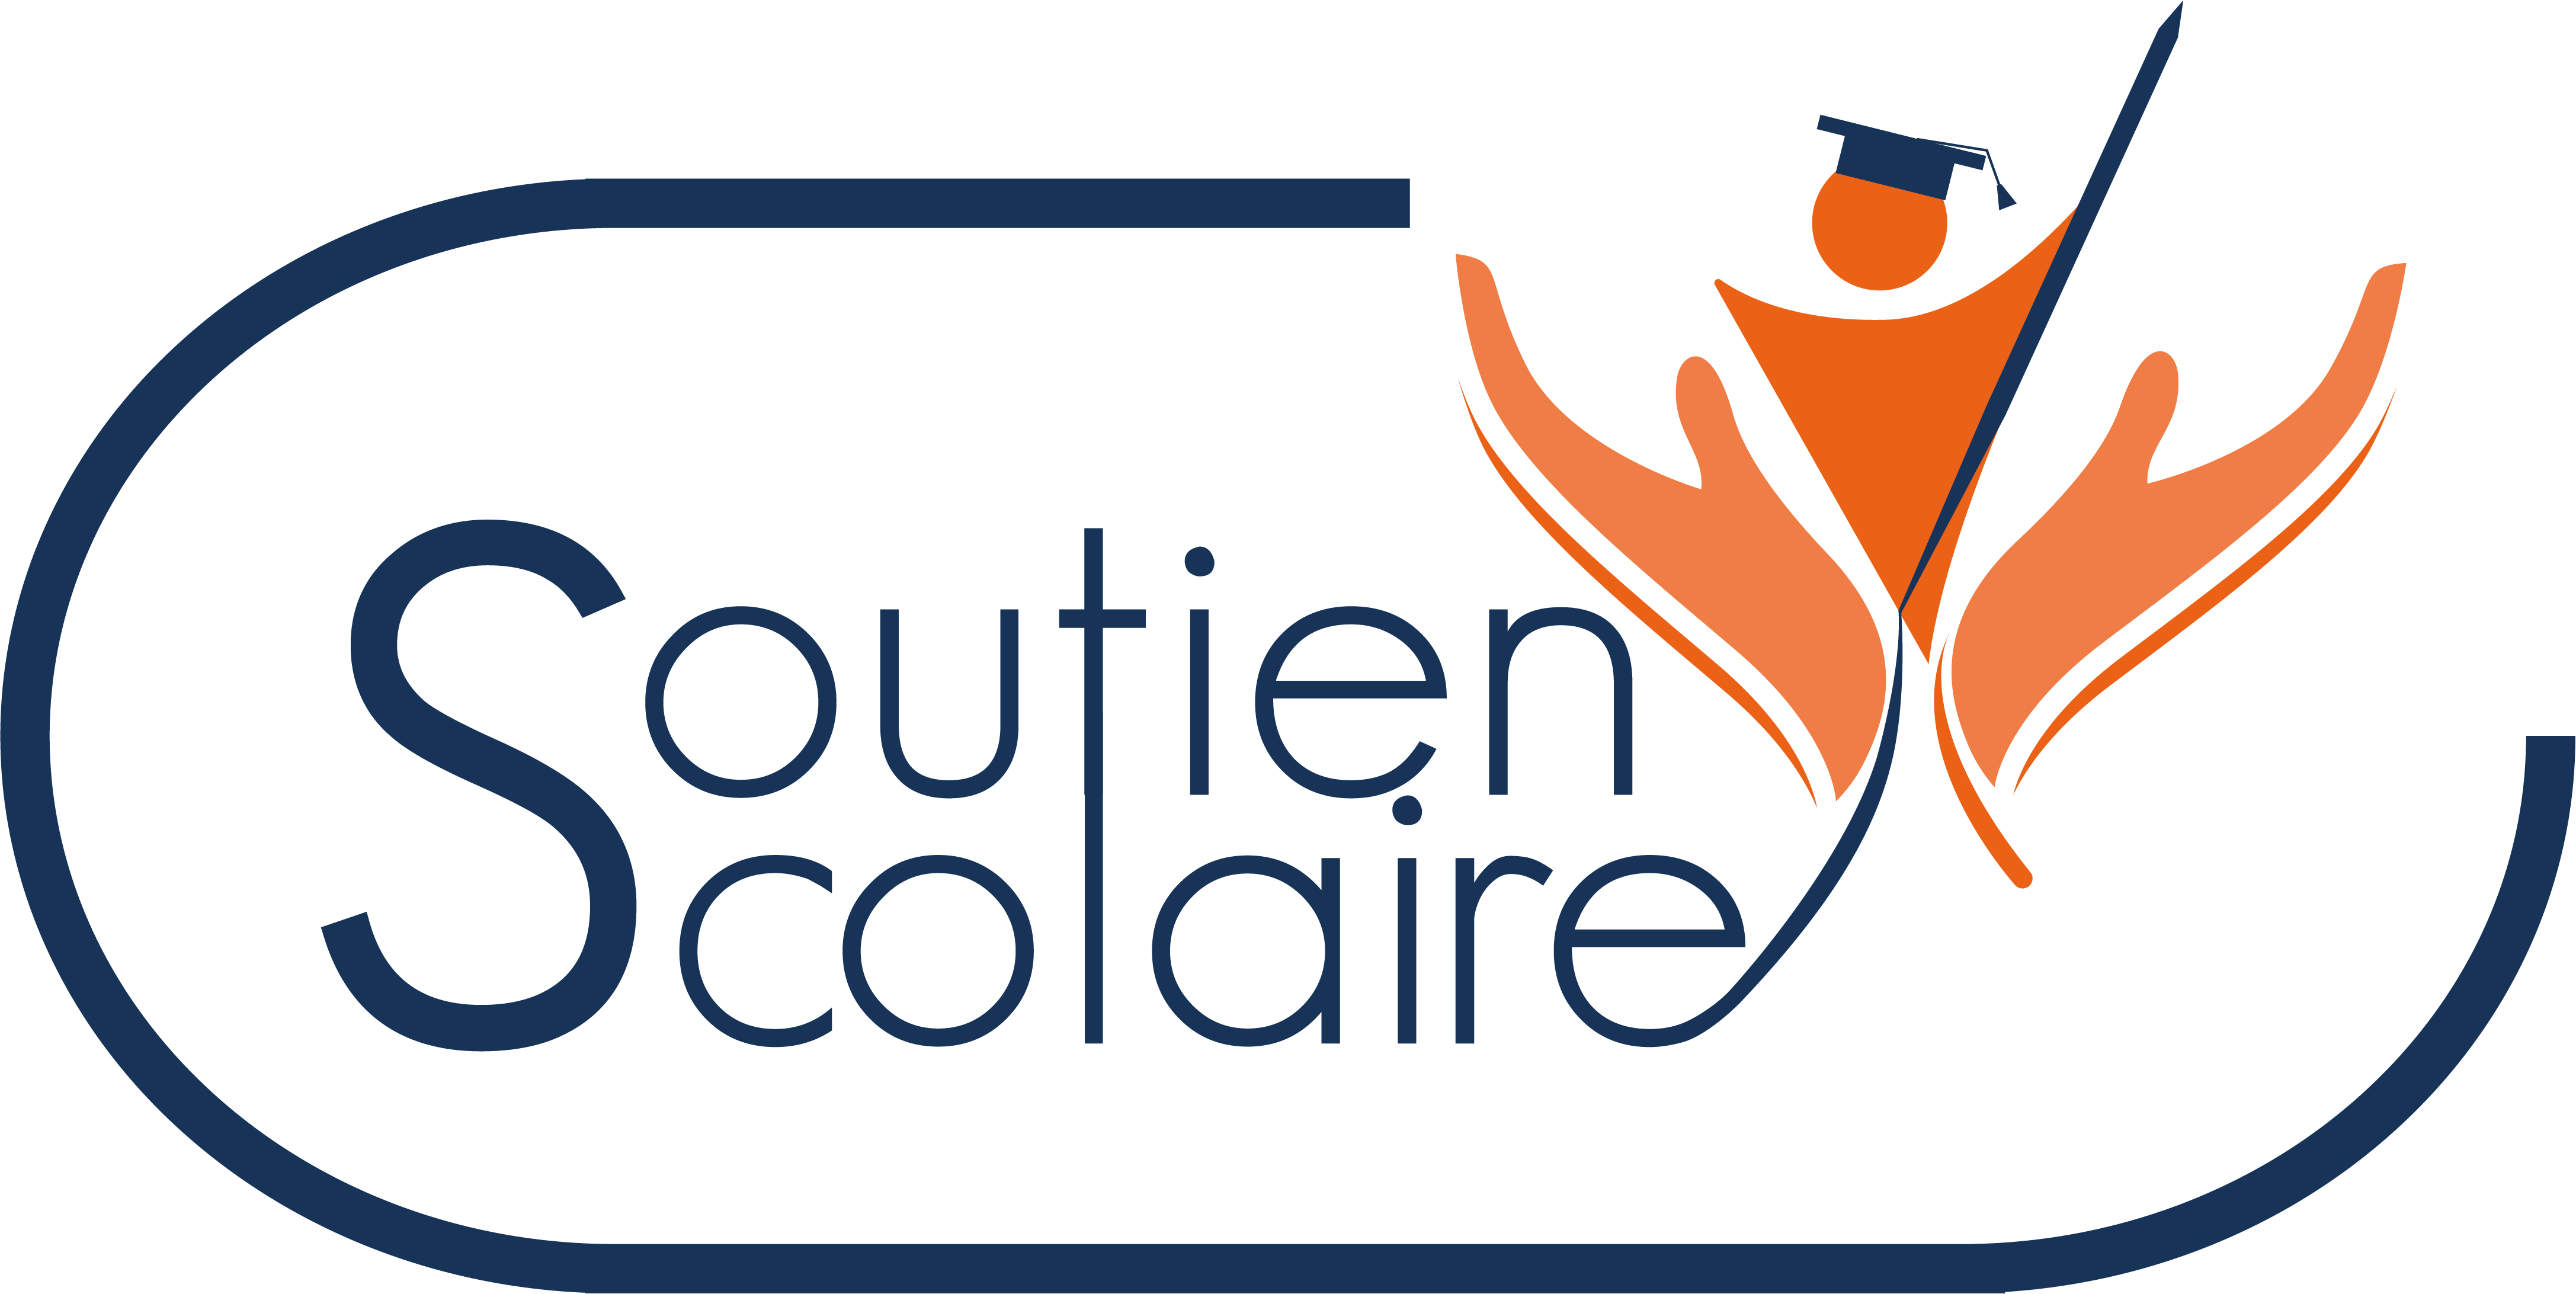 Logo Final Soutien Scolaire transparent